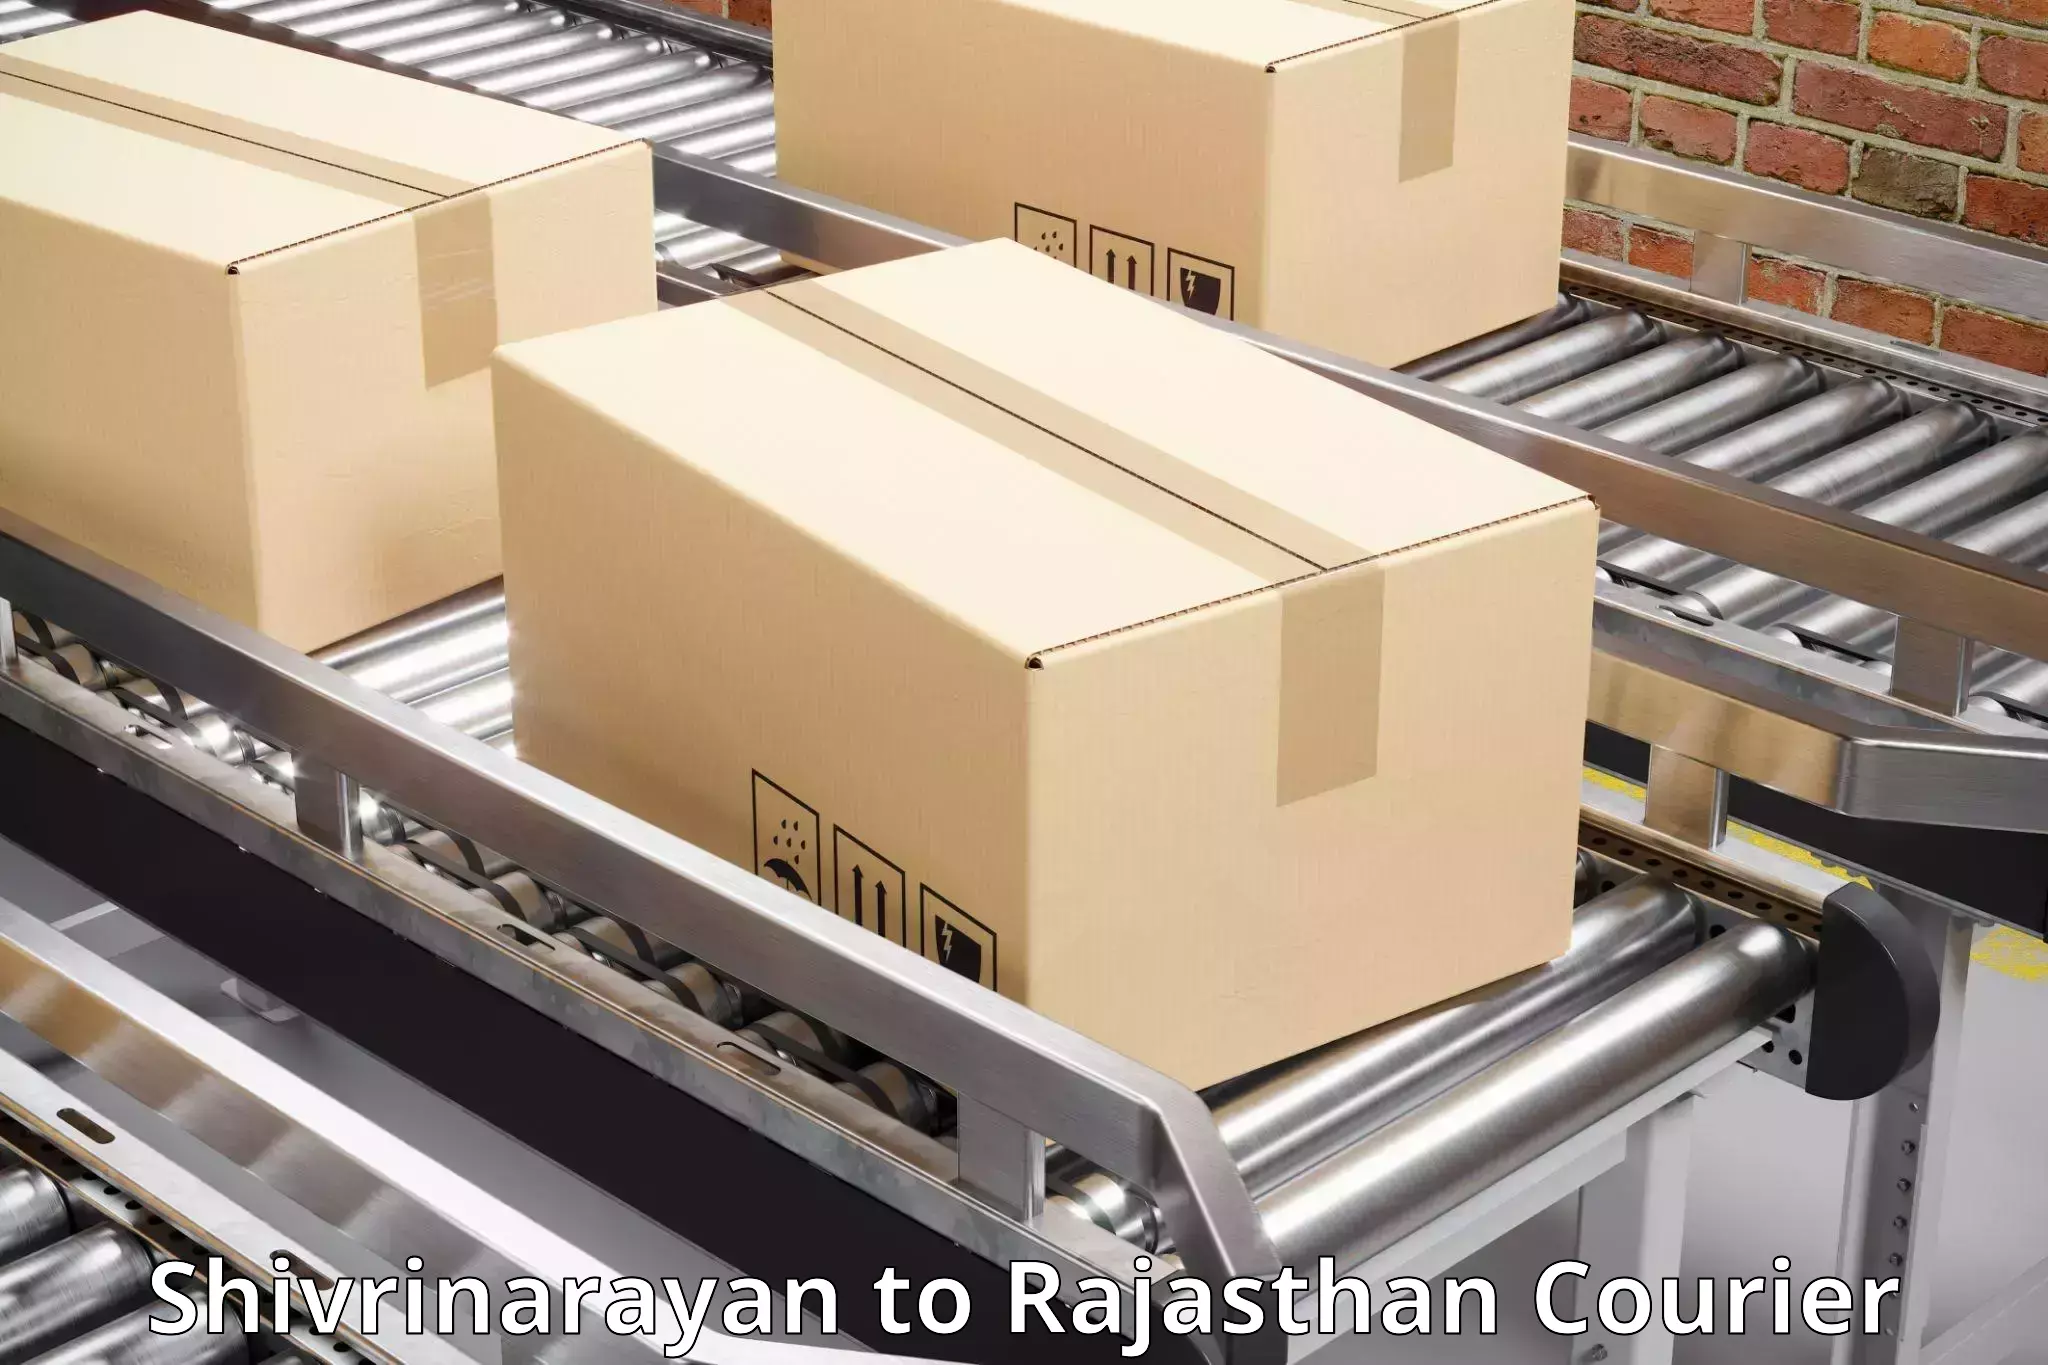 High-capacity parcel service Shivrinarayan to Yathalakunta